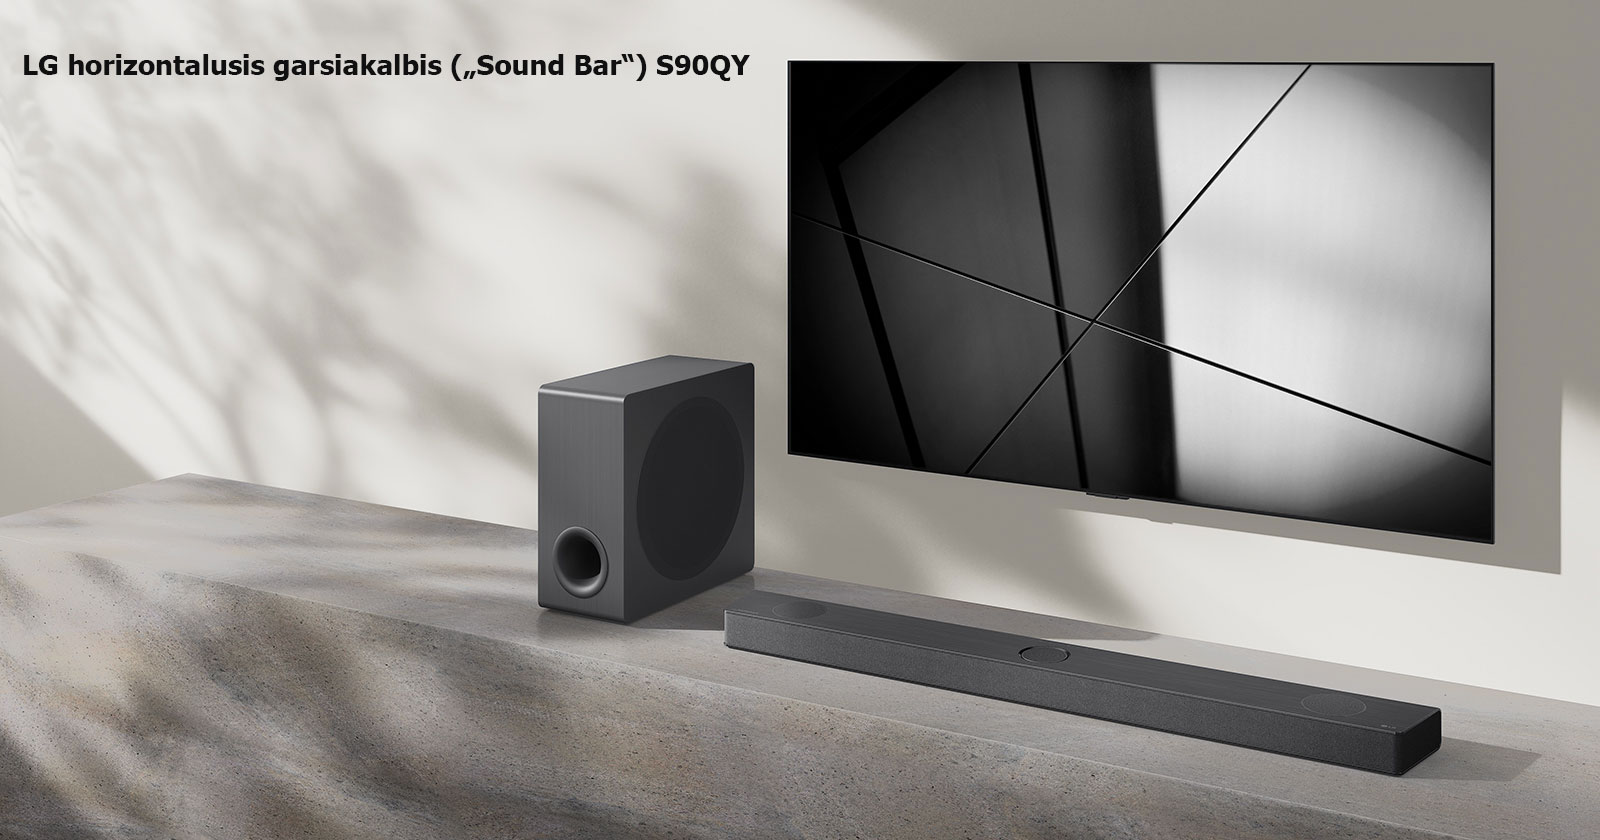 LG horizontalusis garsiakalbis („Sound Bar“) S90QY ir LG televizorius svetainėje pastatyti vienas šalia kito. Televizorius įjungtas, jame rodomas juodos ir baltos spalvų atvaizdas.